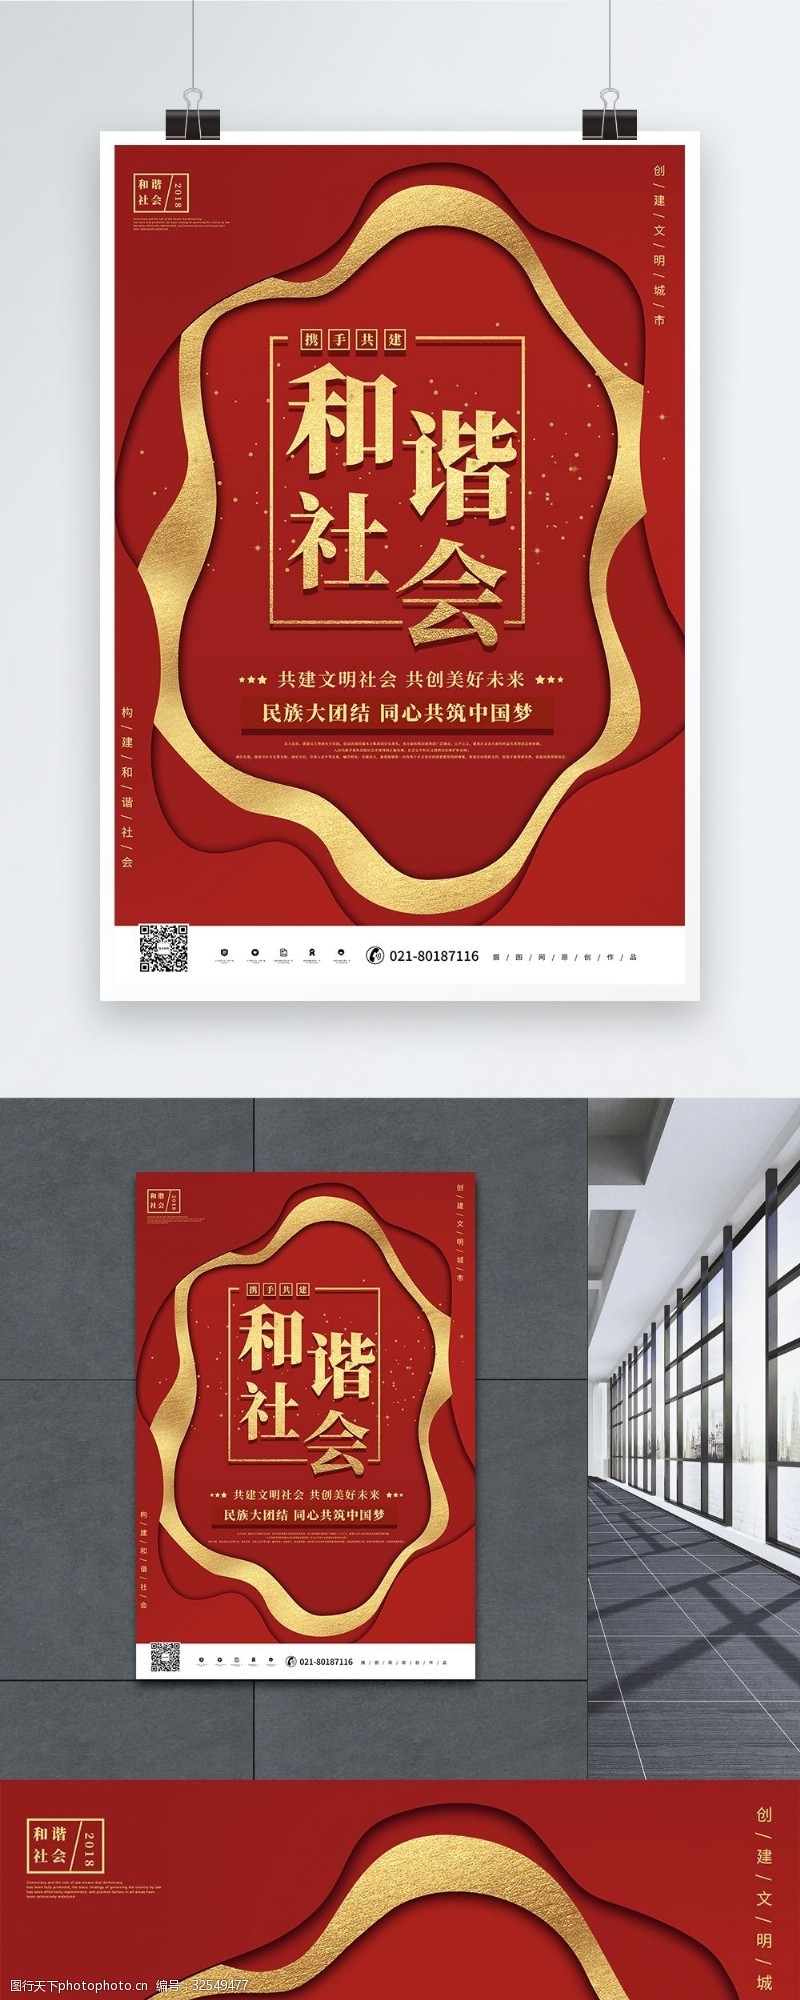 树新风党建红色大气构建和谐社会党政宣传海报